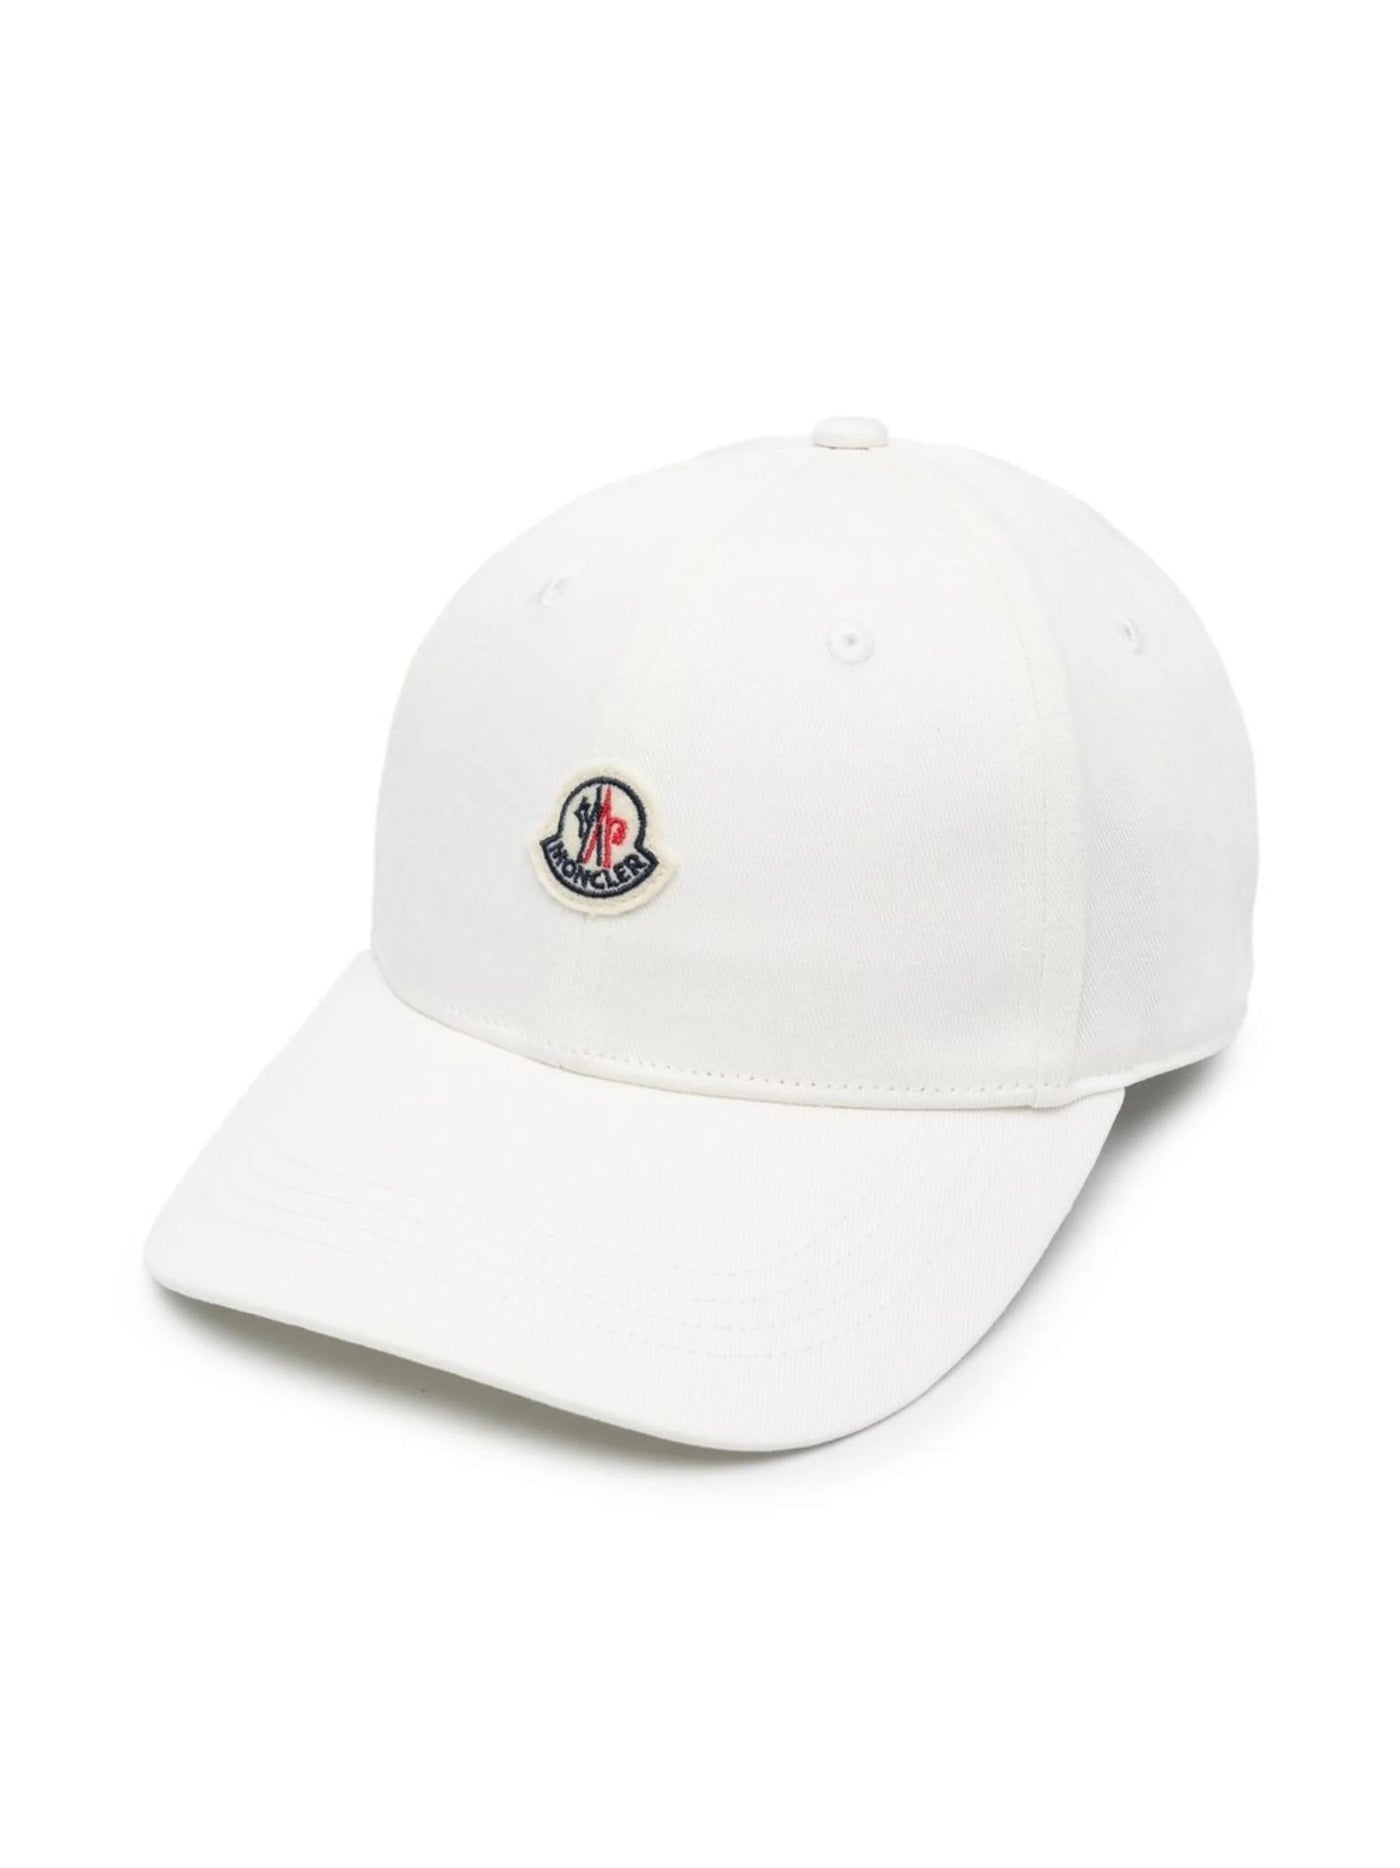 White cotton canvas boy MONCLER baseball cap